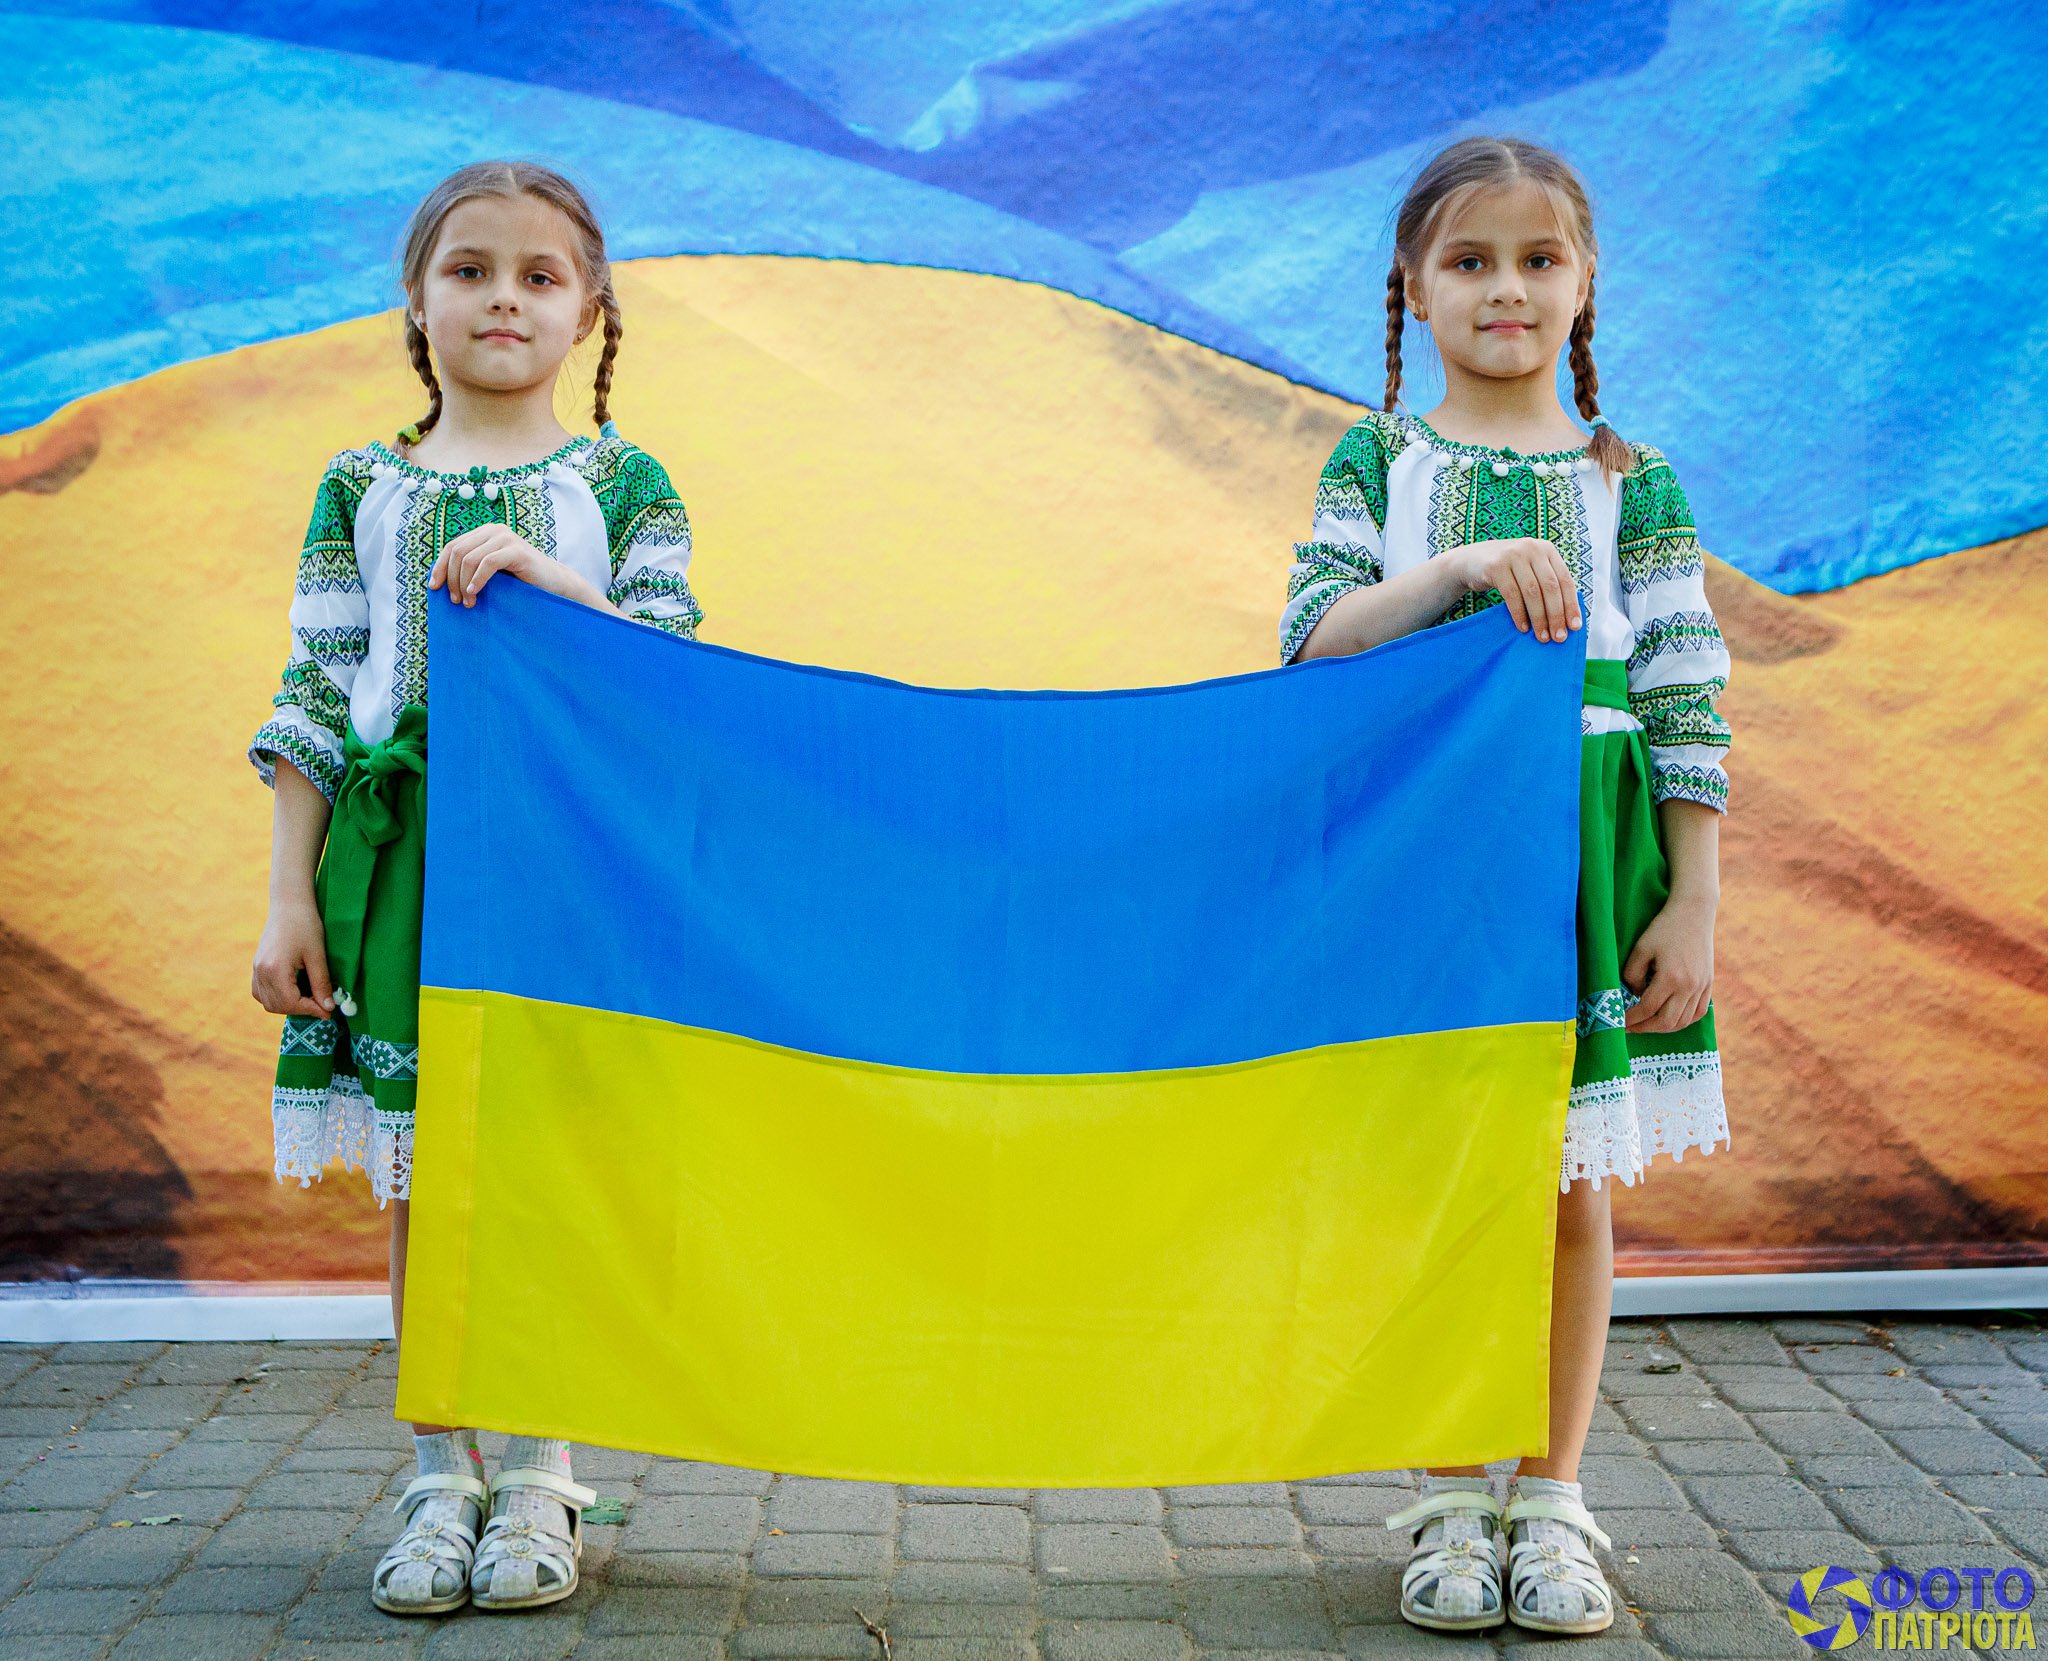 Понад 13 тисяч гривень зібрали на акції "Фото патріота" в Ужгороді (ФОТО)